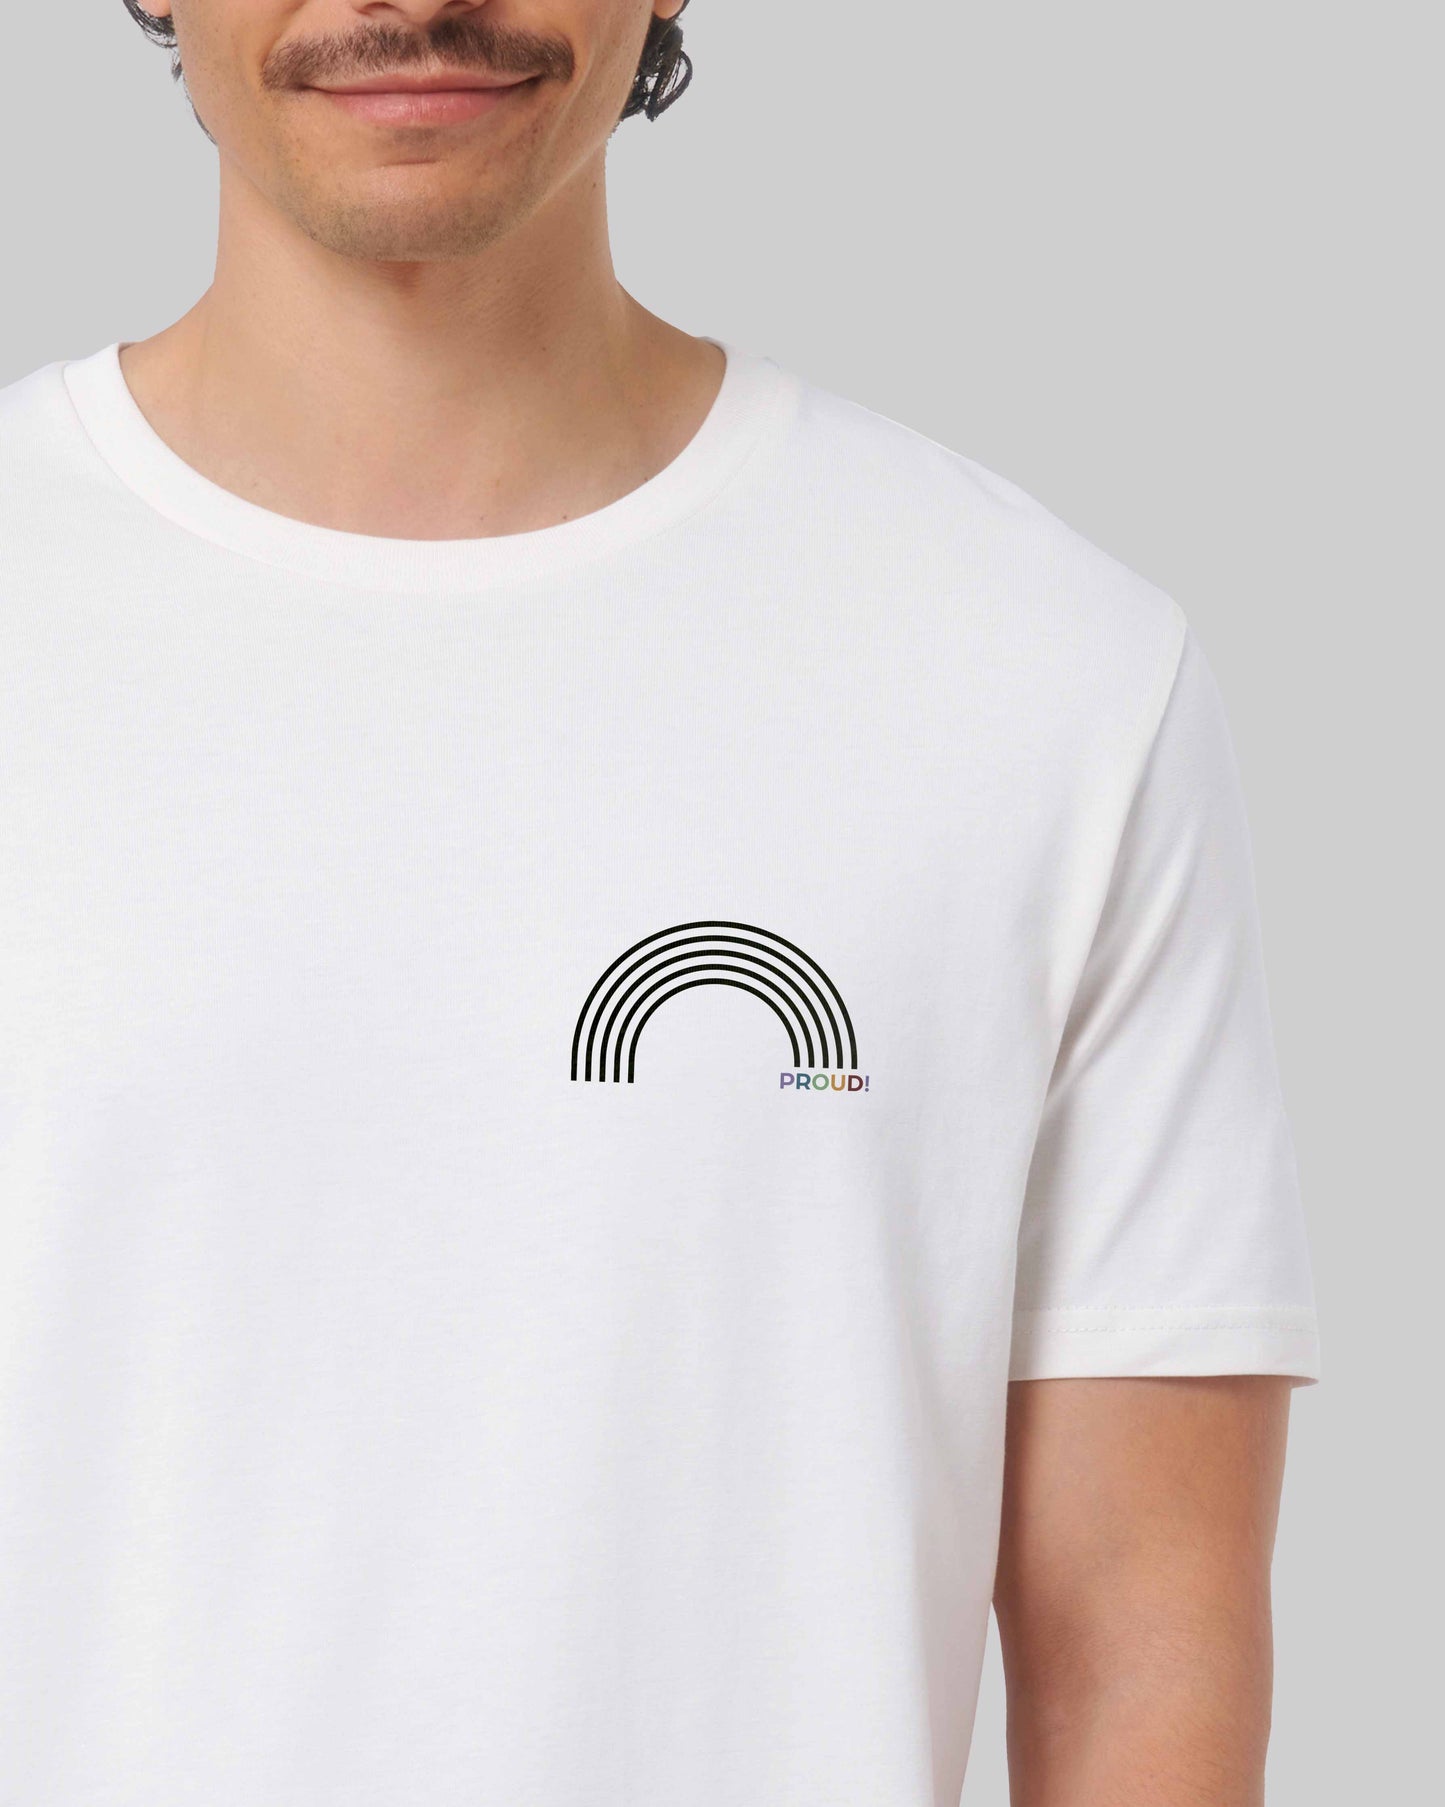 EINHORST® unisex Organic Shirt in Weiß mit dem Motiv "proud Regenbogen" in der Kombination schwarzer Regenbogen mit bunter Schrift, Bild von männlicher Person mit Shirt